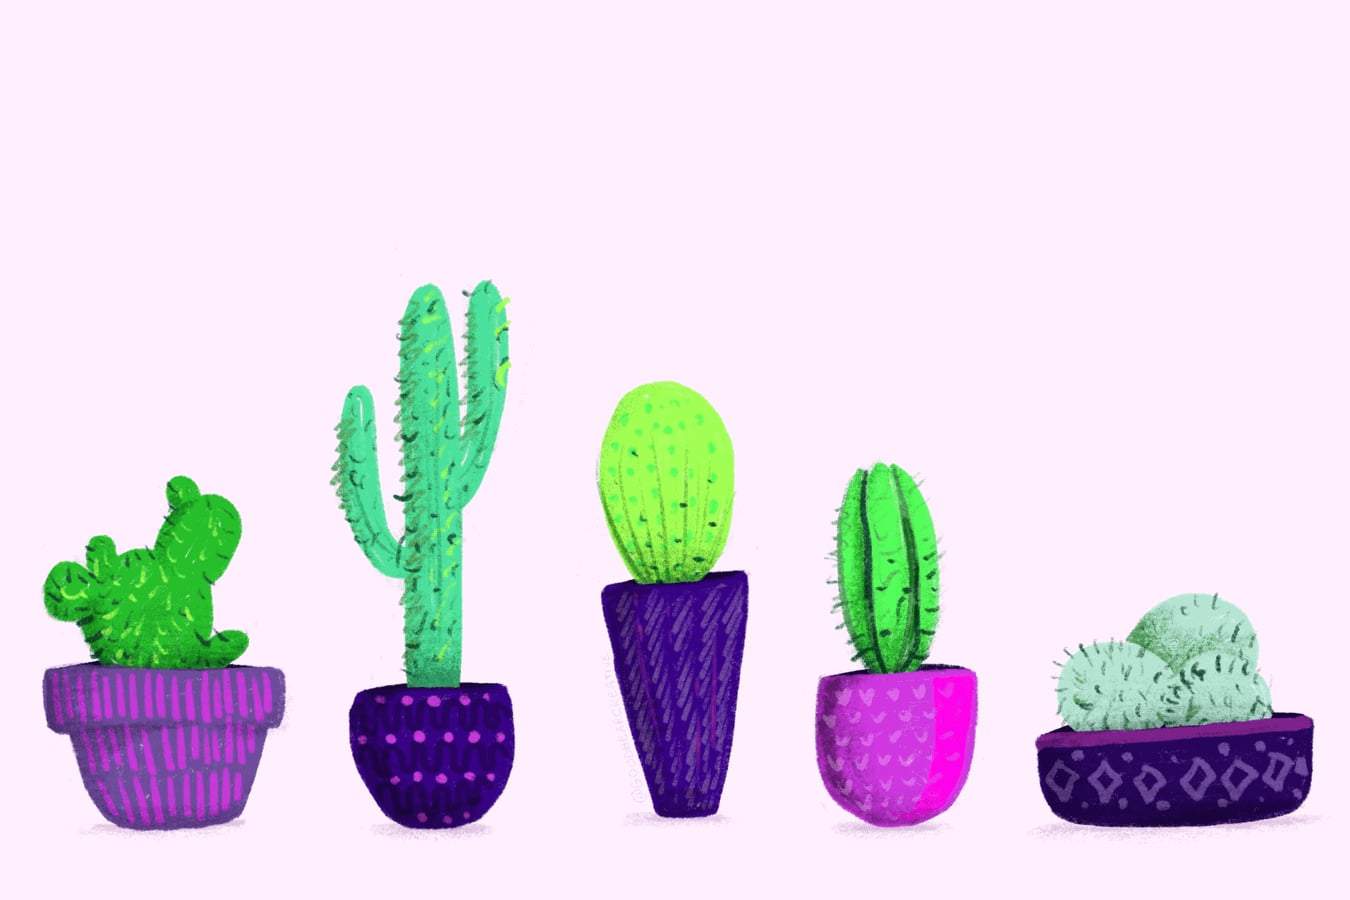 Cactus illustrations.